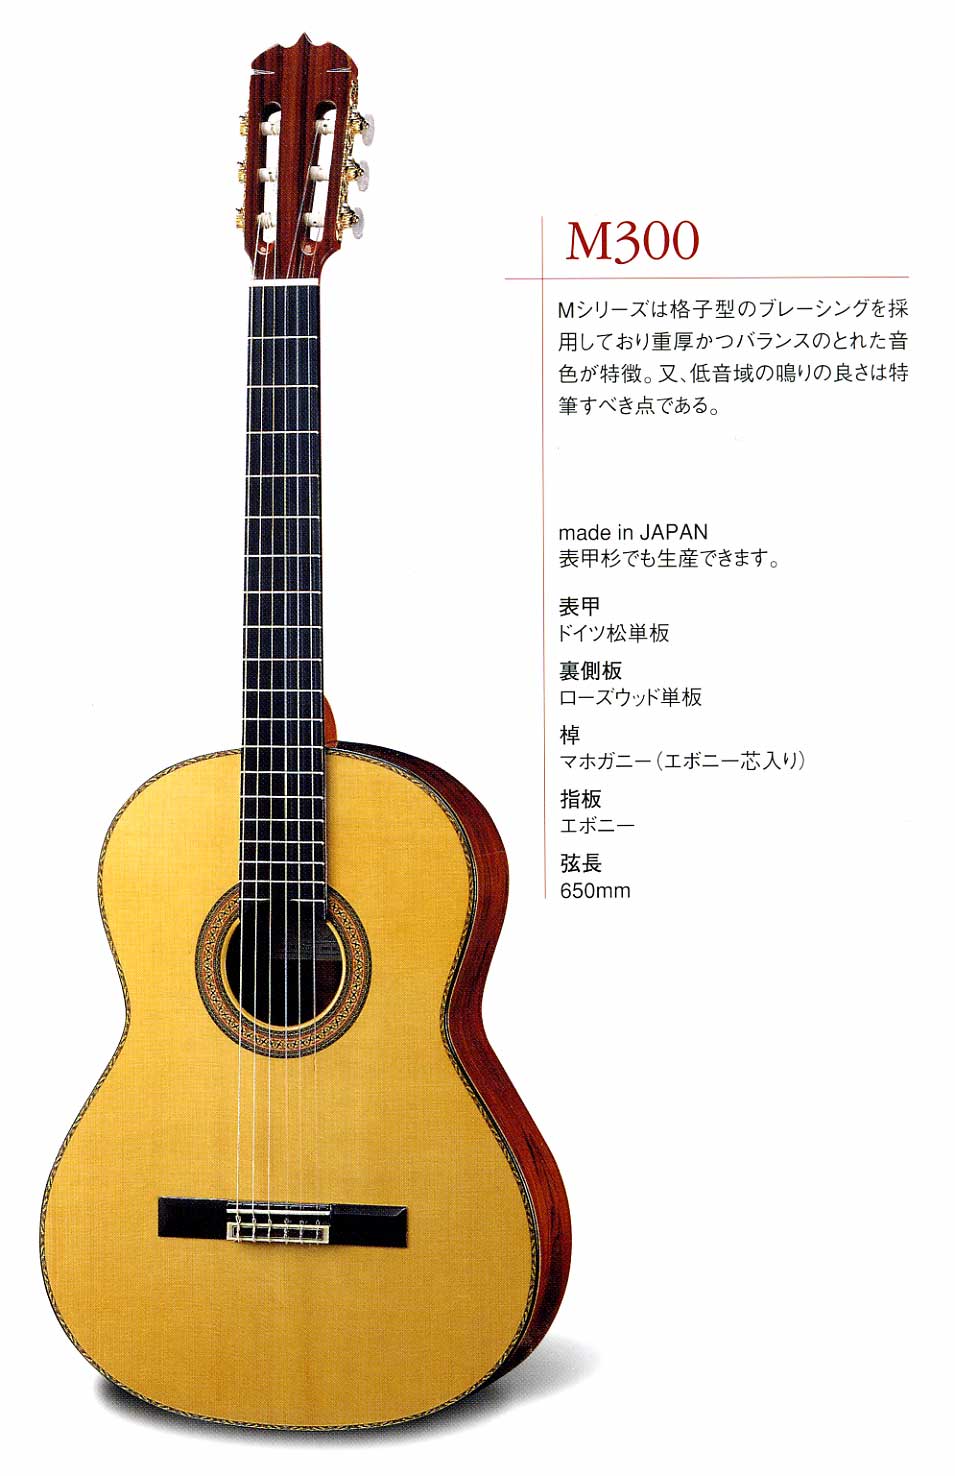 松岡良治 M100L 全単板製 レディスギター